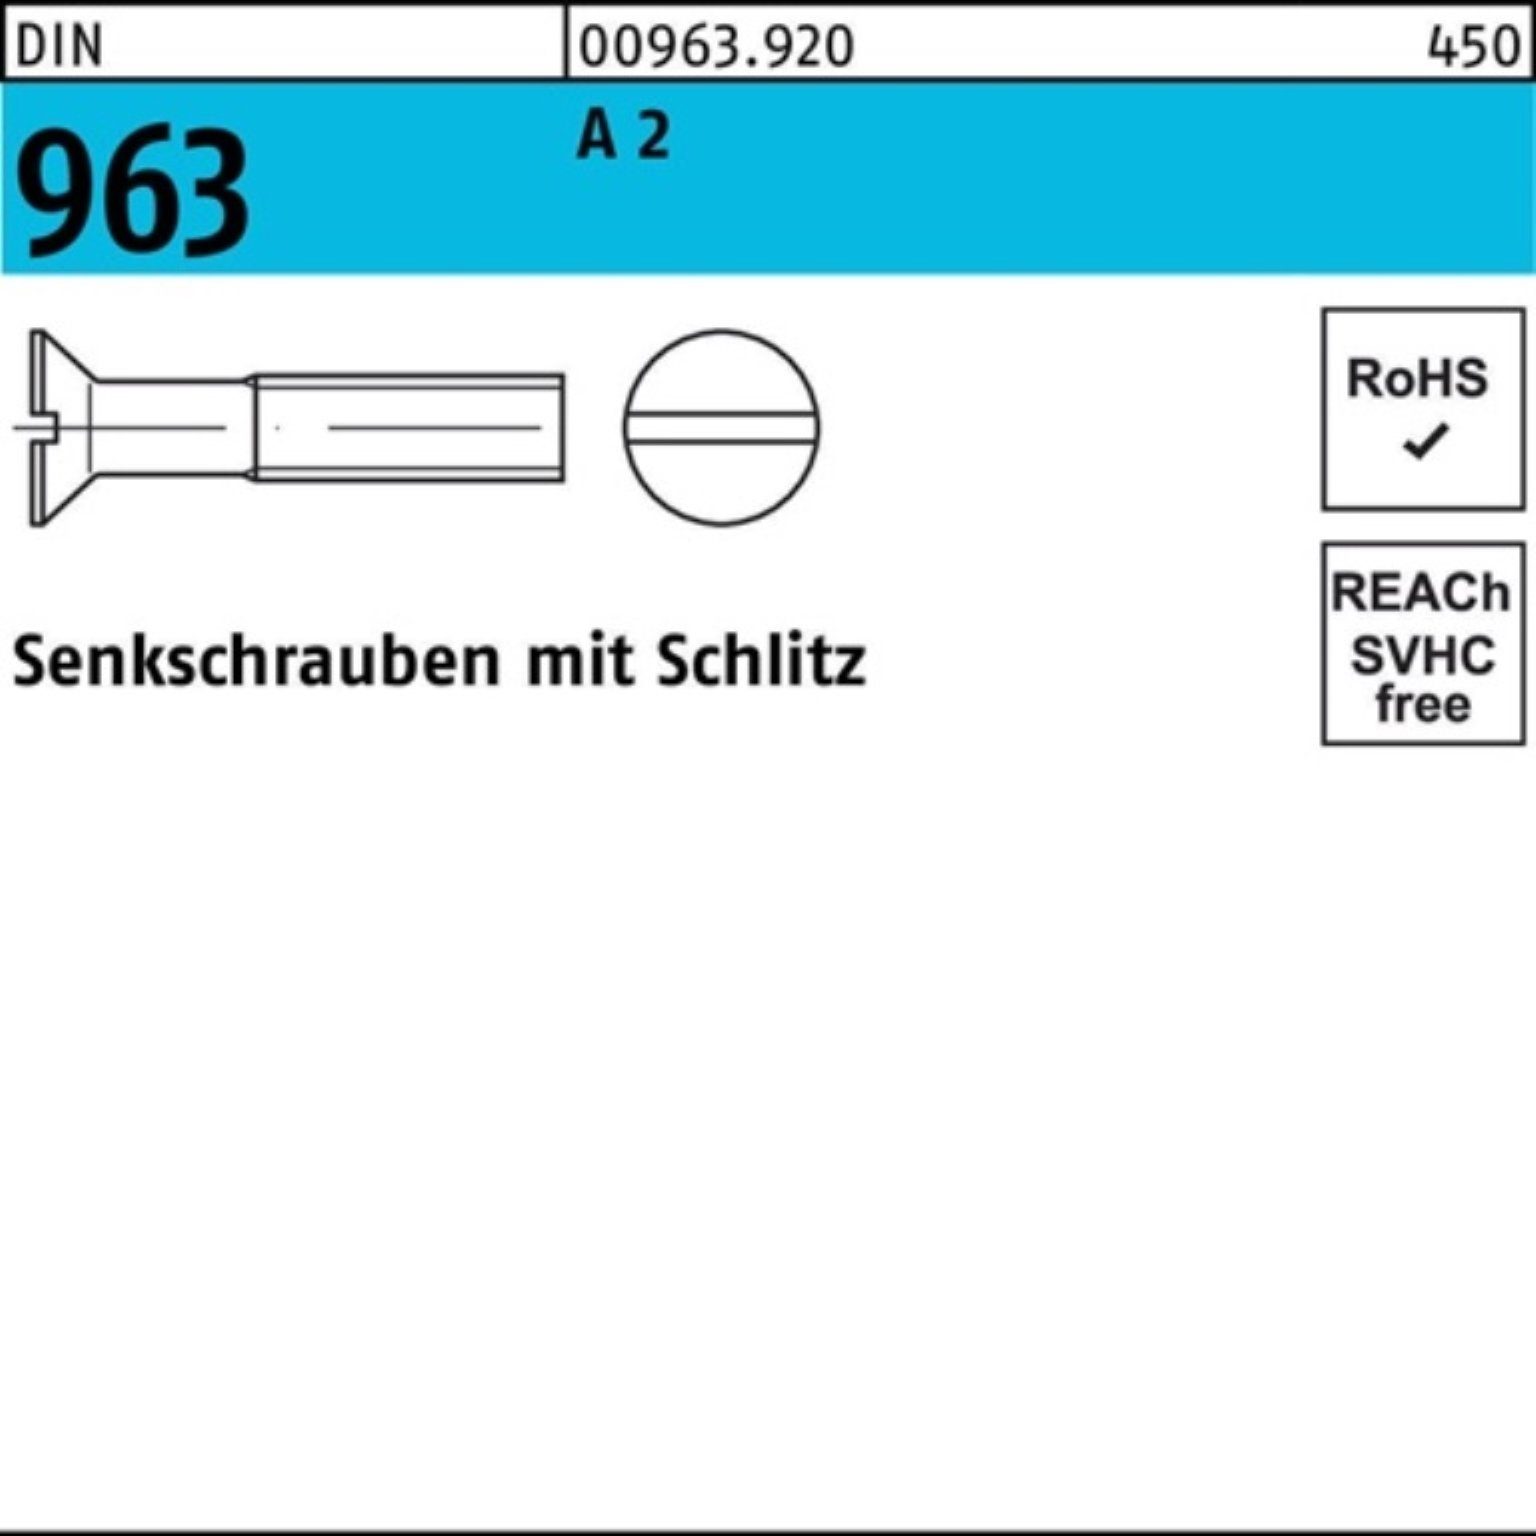 Pack Senkschraube M2x Reyher Senkschraube 1000 1000er DIN DIN 18 2 A 963 Stück 96 Schlitz